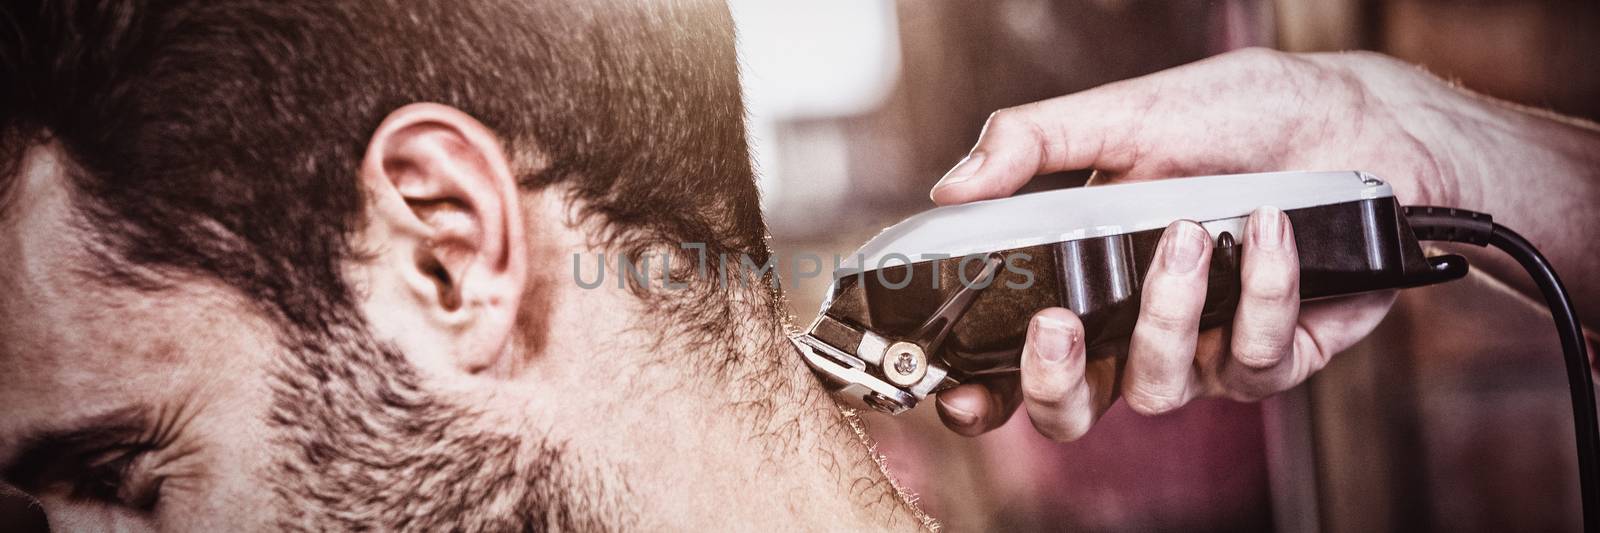 Man getting his hair trimmed at the hair salon